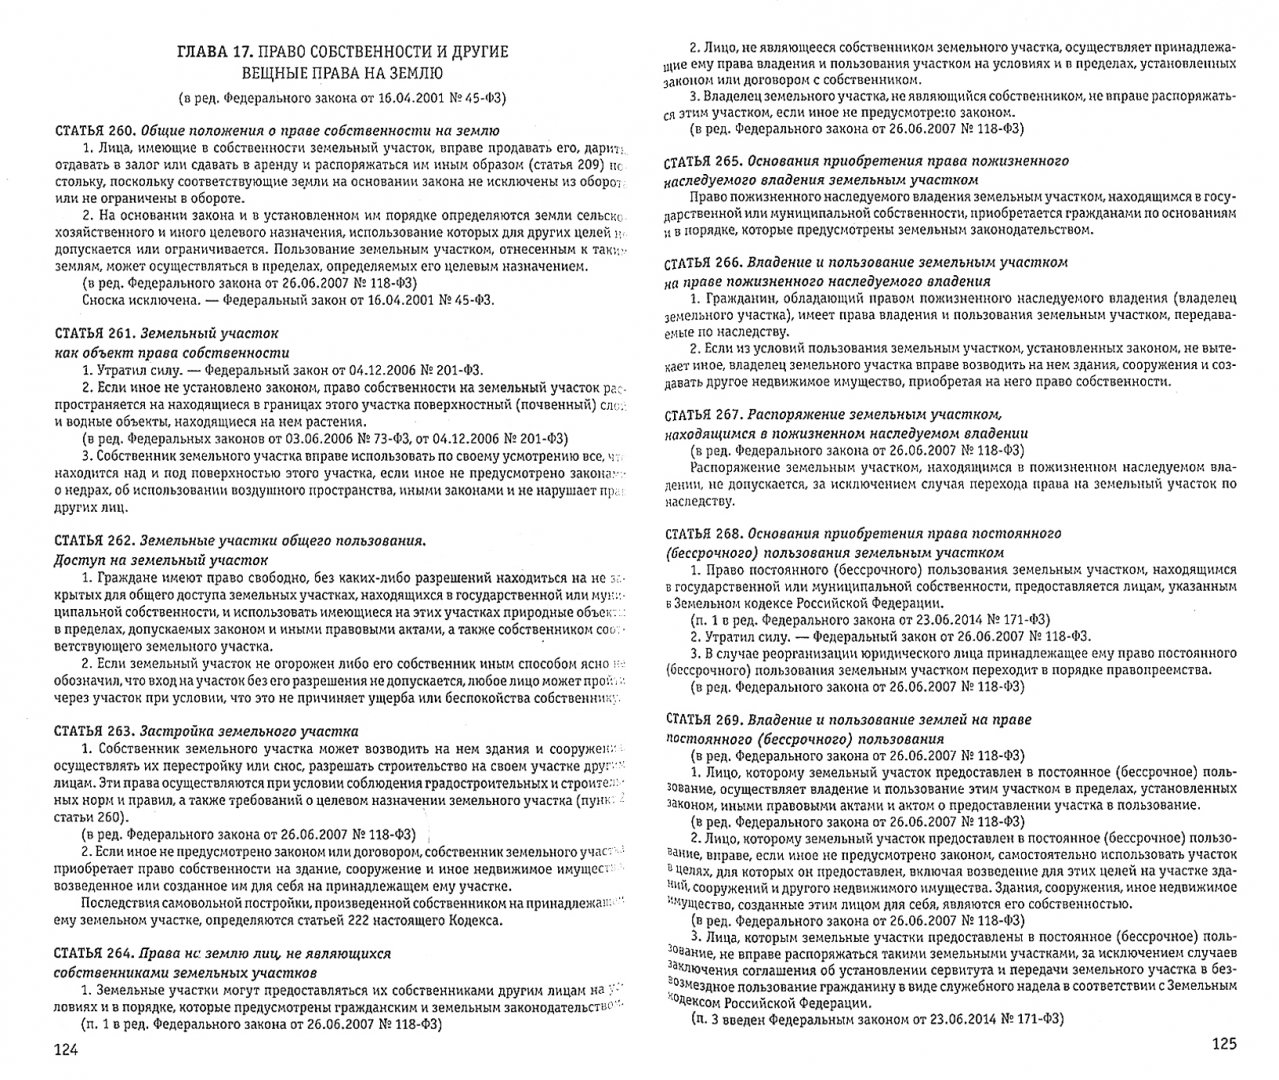 Иллюстрация 1 из 8 для Гражданский кодекс Российской Федерации по состоянию на 01.10.2018 г. | Лабиринт - книги. Источник: Лабиринт